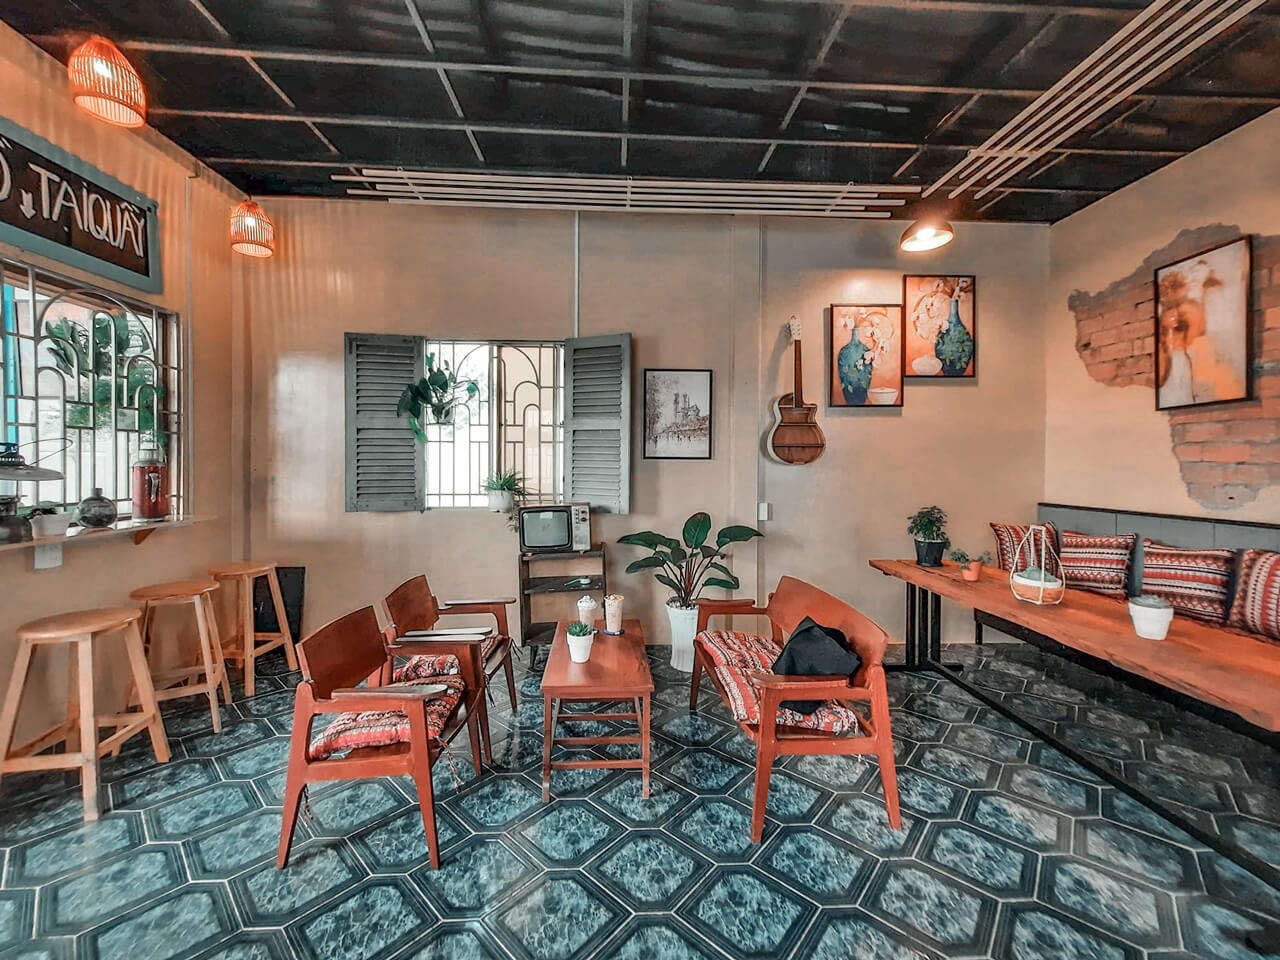 những quán café retro thường thiết kế với ý tưởng về những gì xưa cũ, tái hiện lại được hình ảnh, đặc điểm, không gian của một thời kỳ nào đó